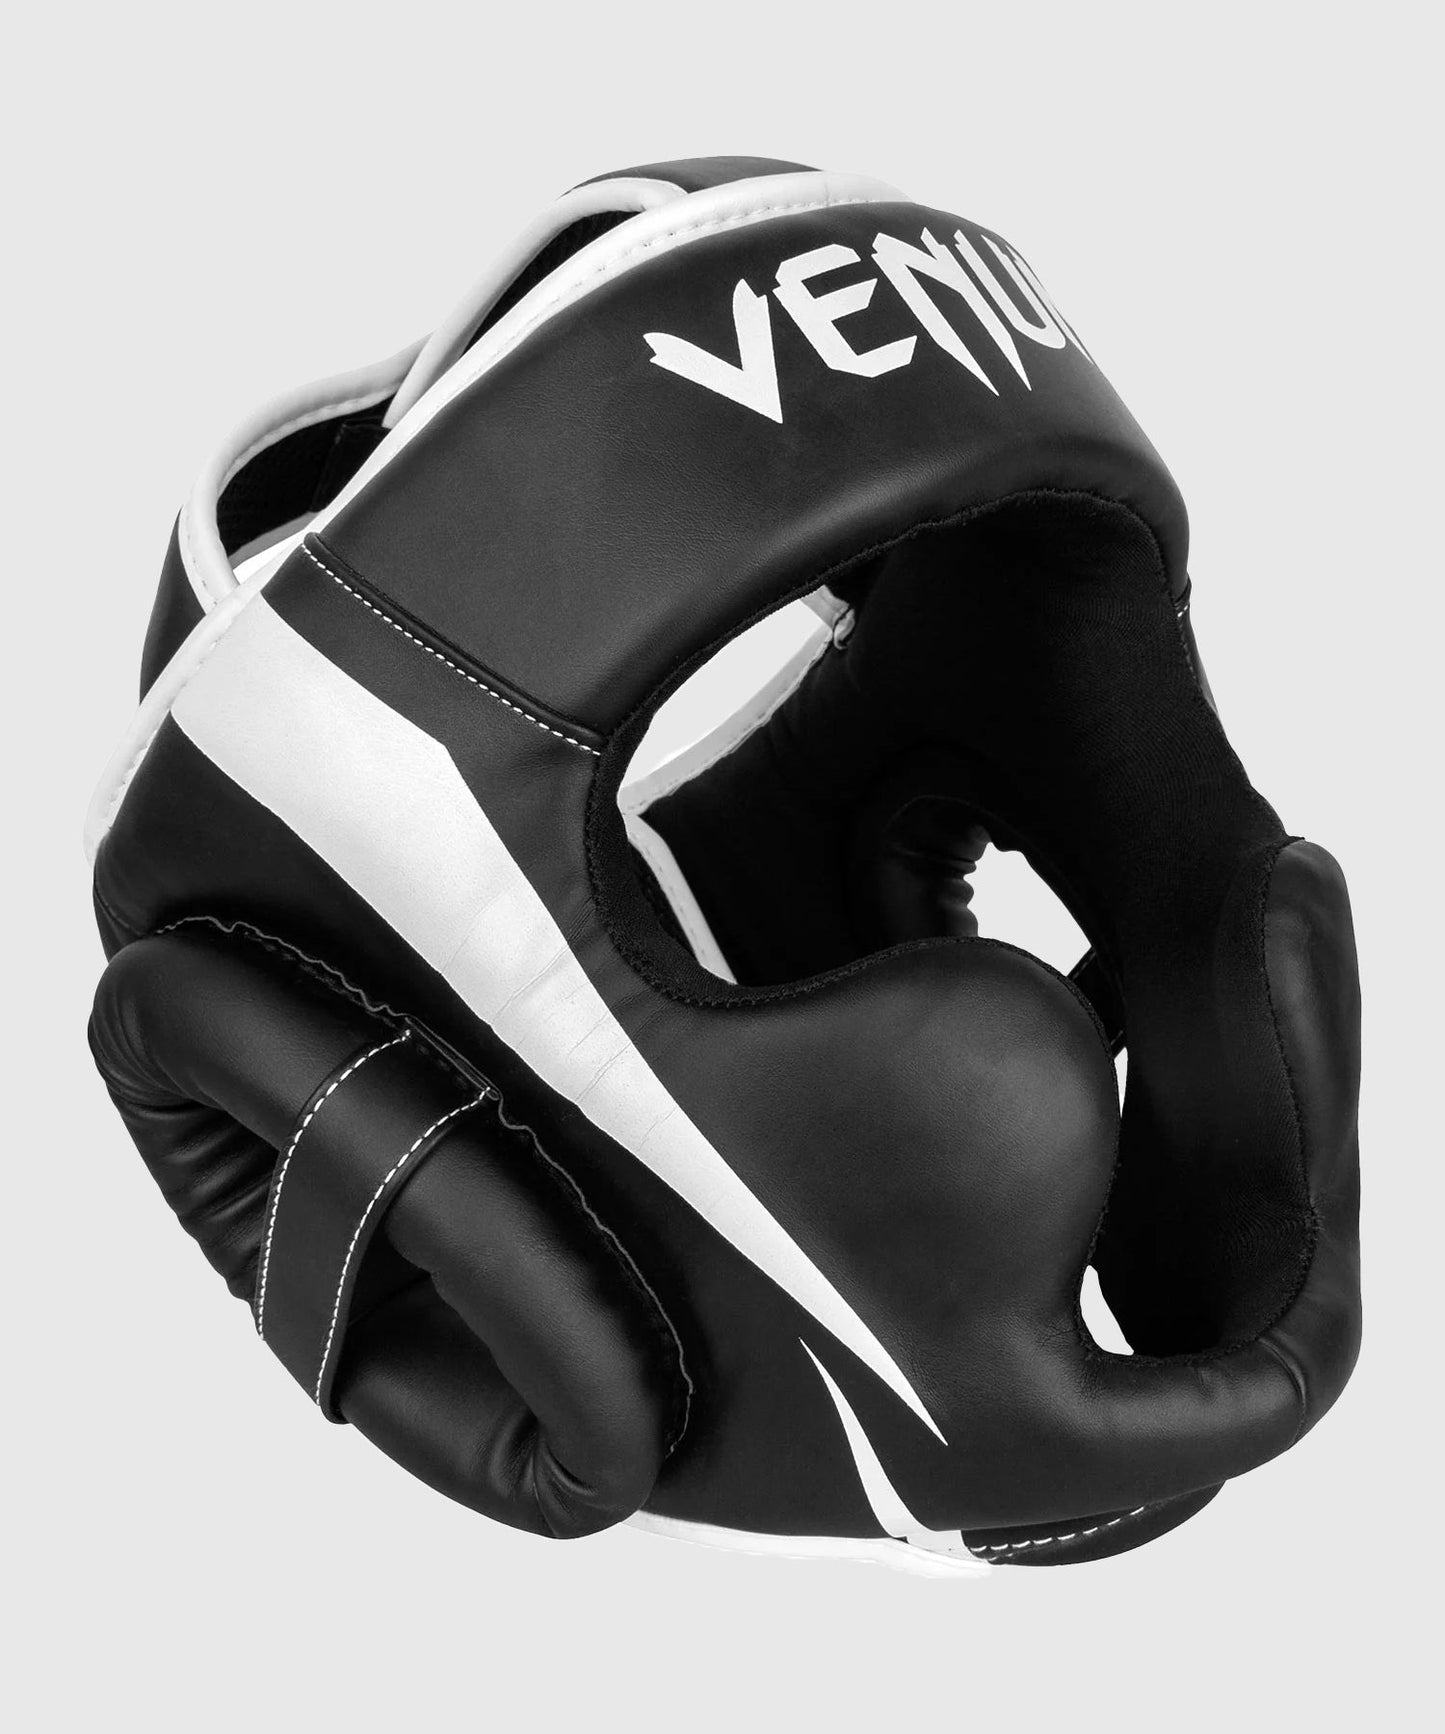 Venum Elite Kopfschutz - Schwarz/Weiß